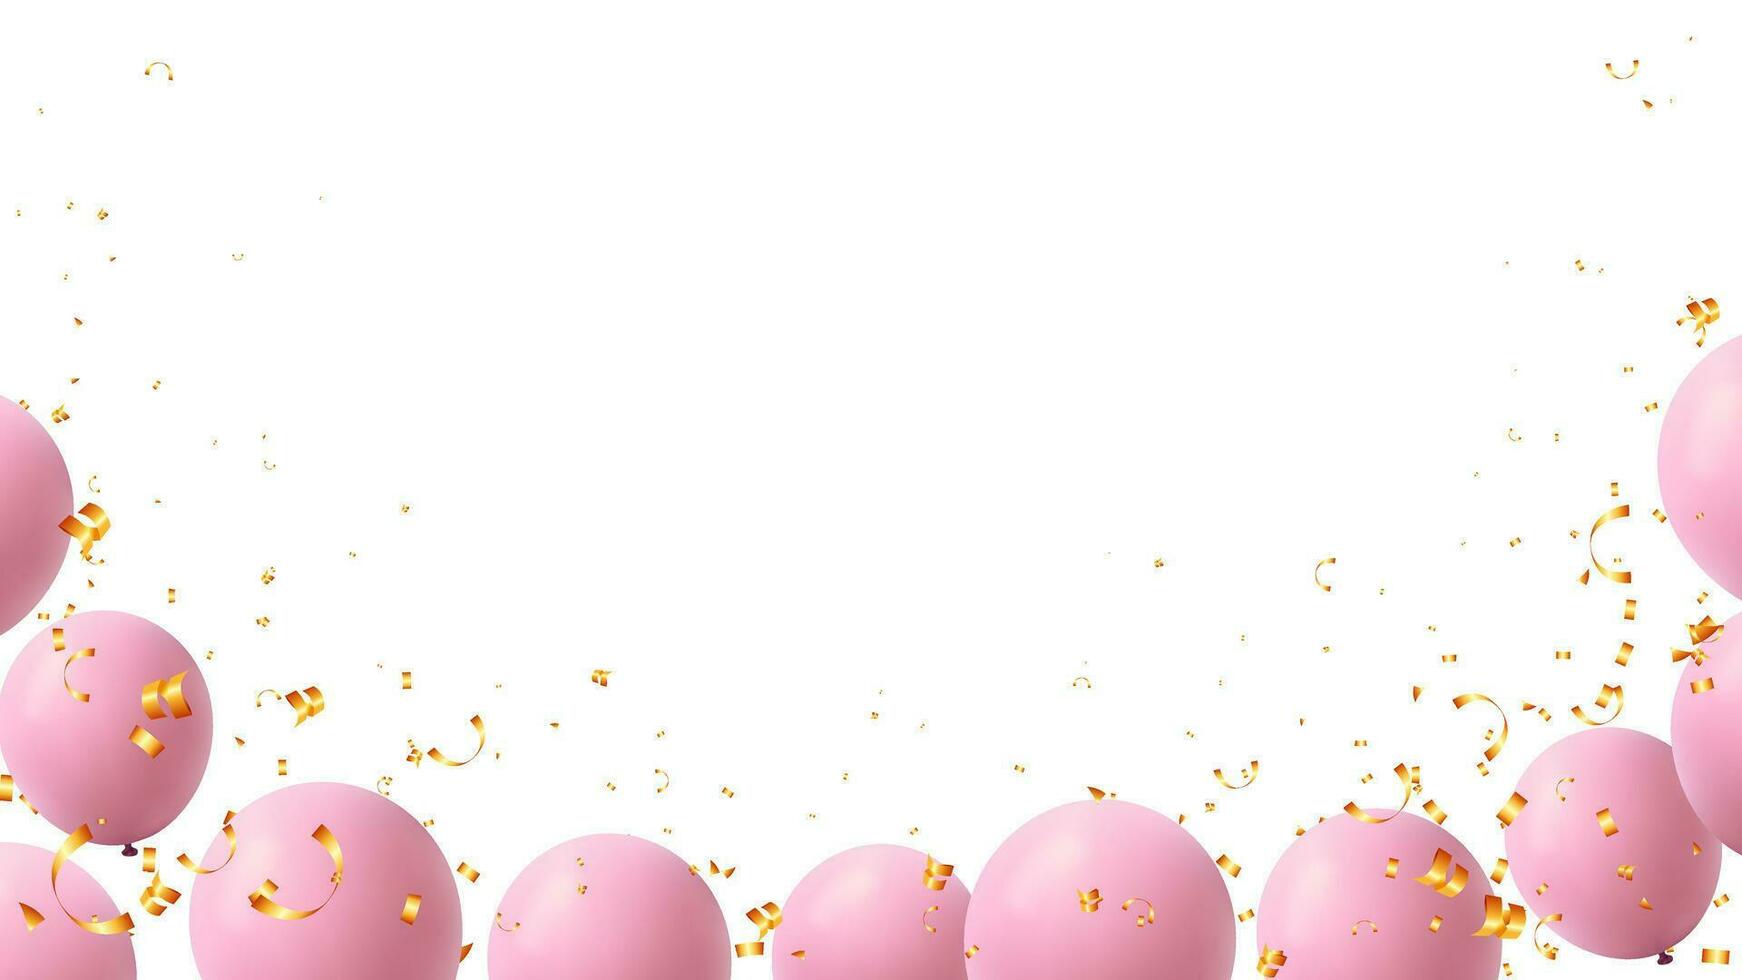 suave rosado globo y oro papel picado elementos para saludo tarjeta, bebé ducha, evento invitación vector